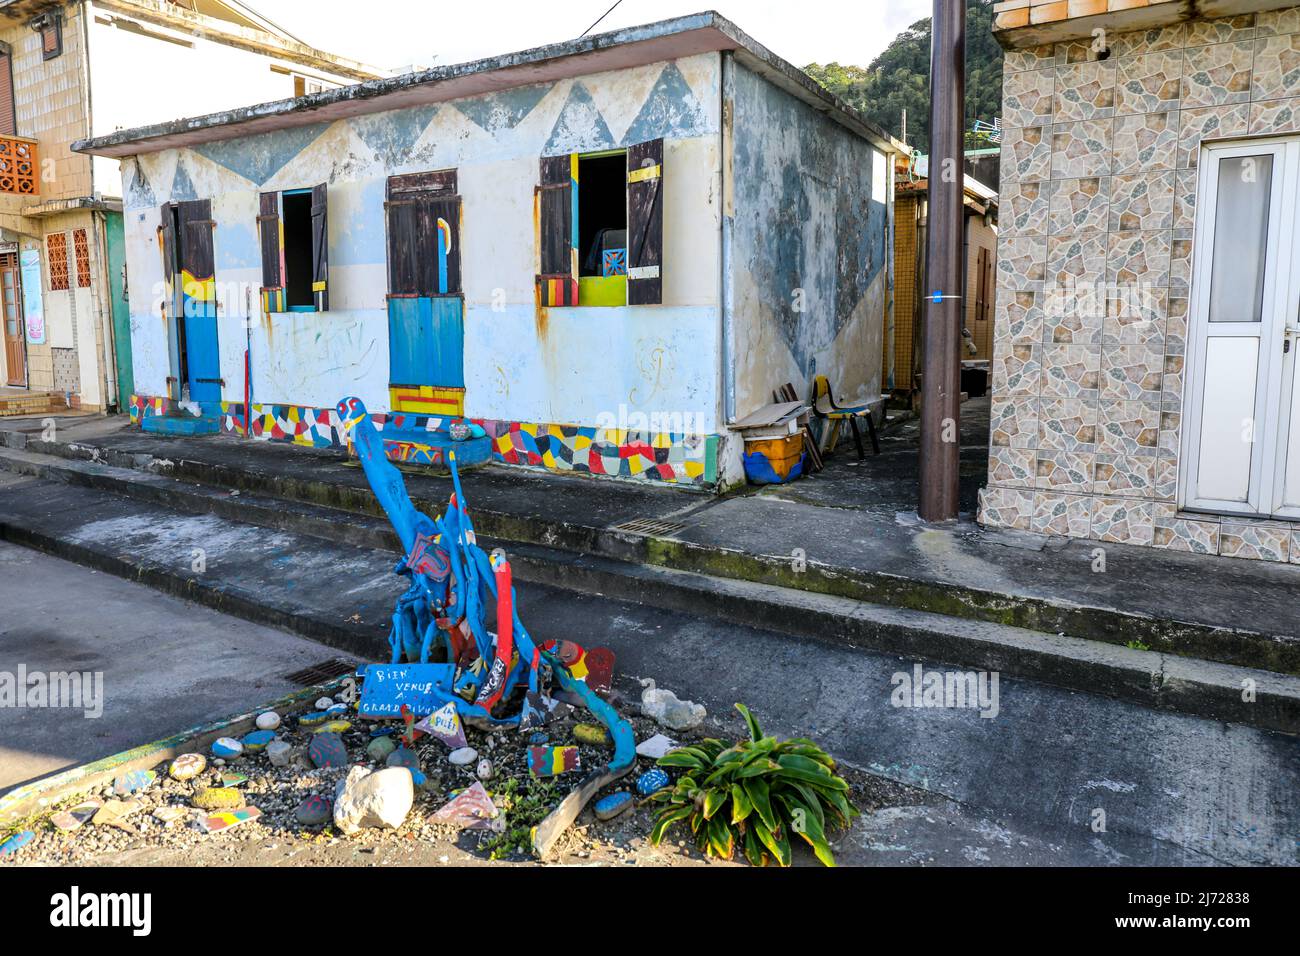 Petite maison colorée à Grand-Rivière, Martinique, Antilles Françaises Banque D'Images